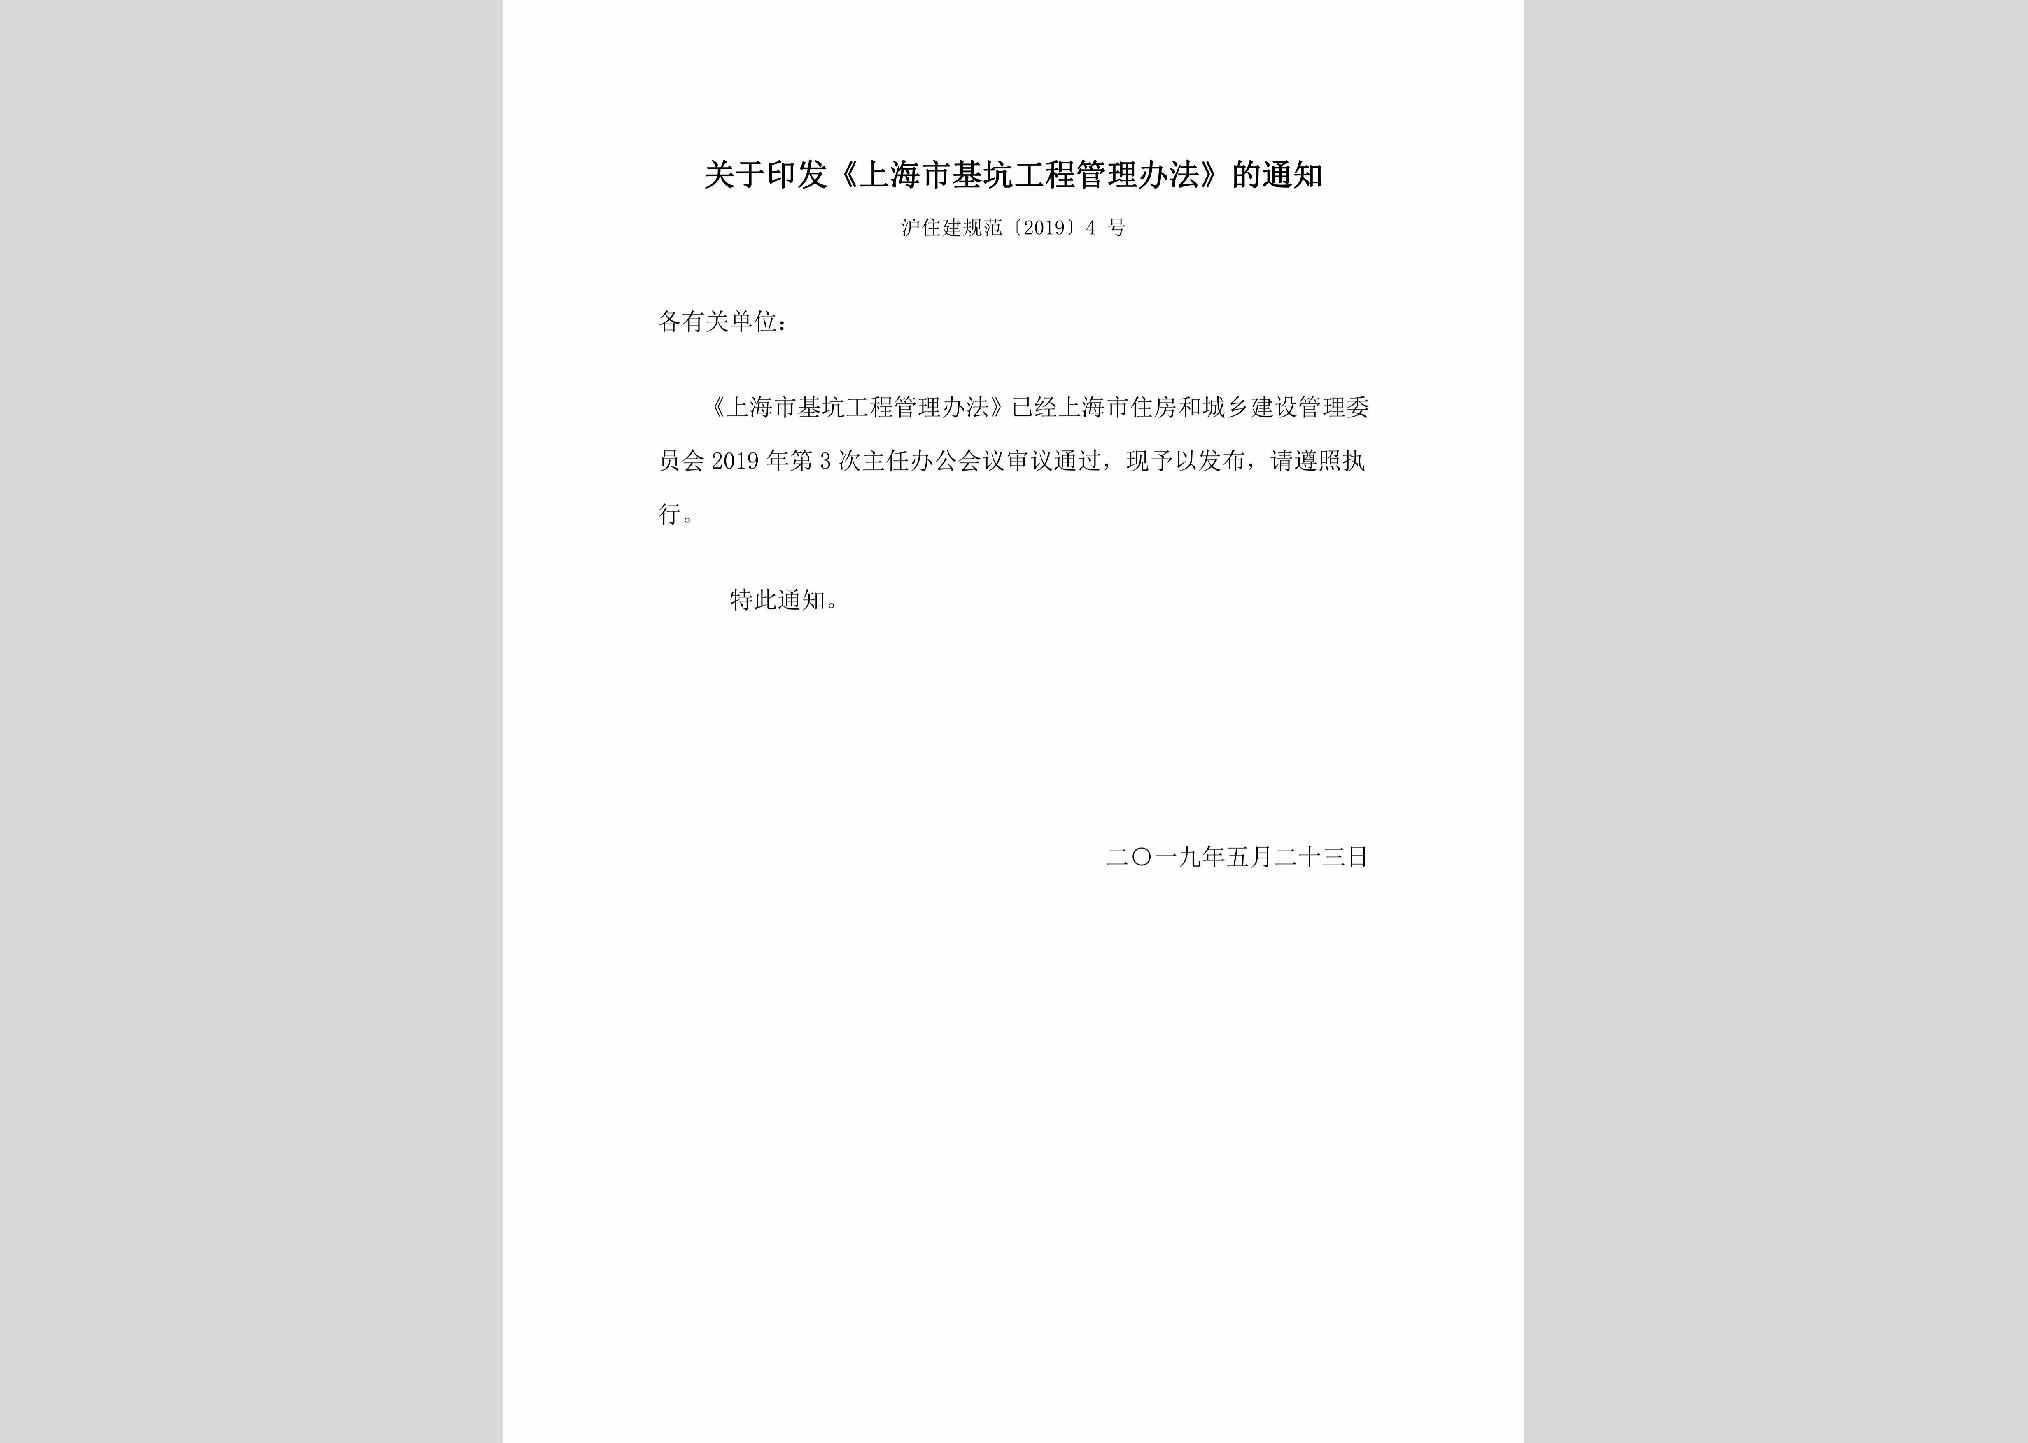 沪住建规范[2019]4号：关于印发《上海市基坑工程管理办法》的通知